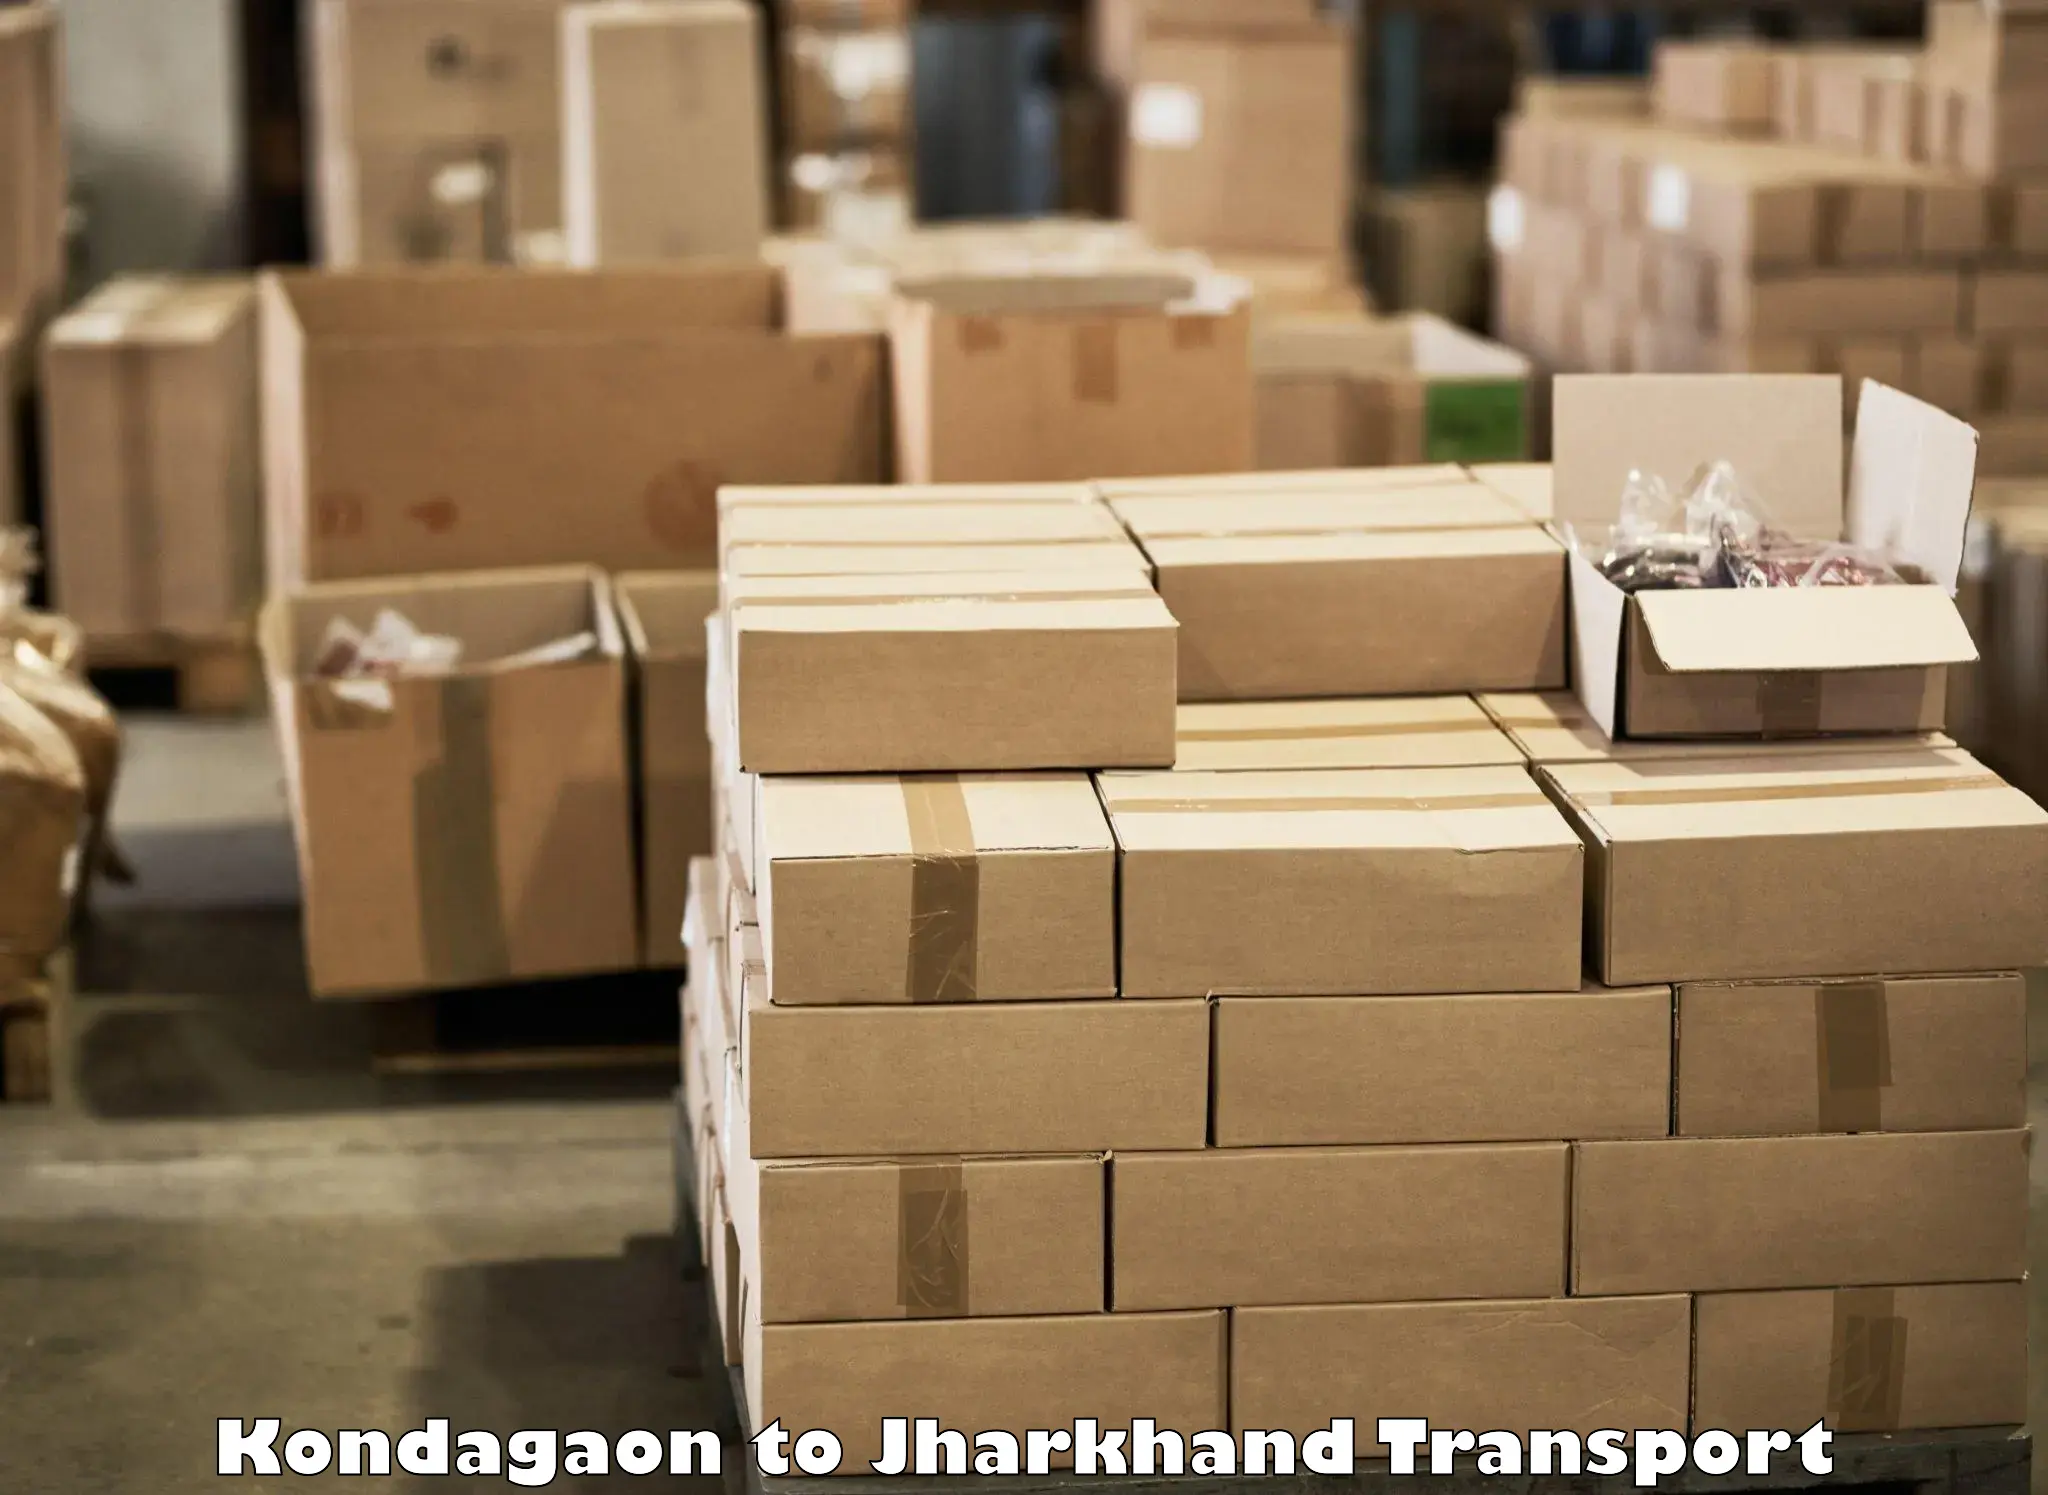 Online transport service Kondagaon to Bokaro